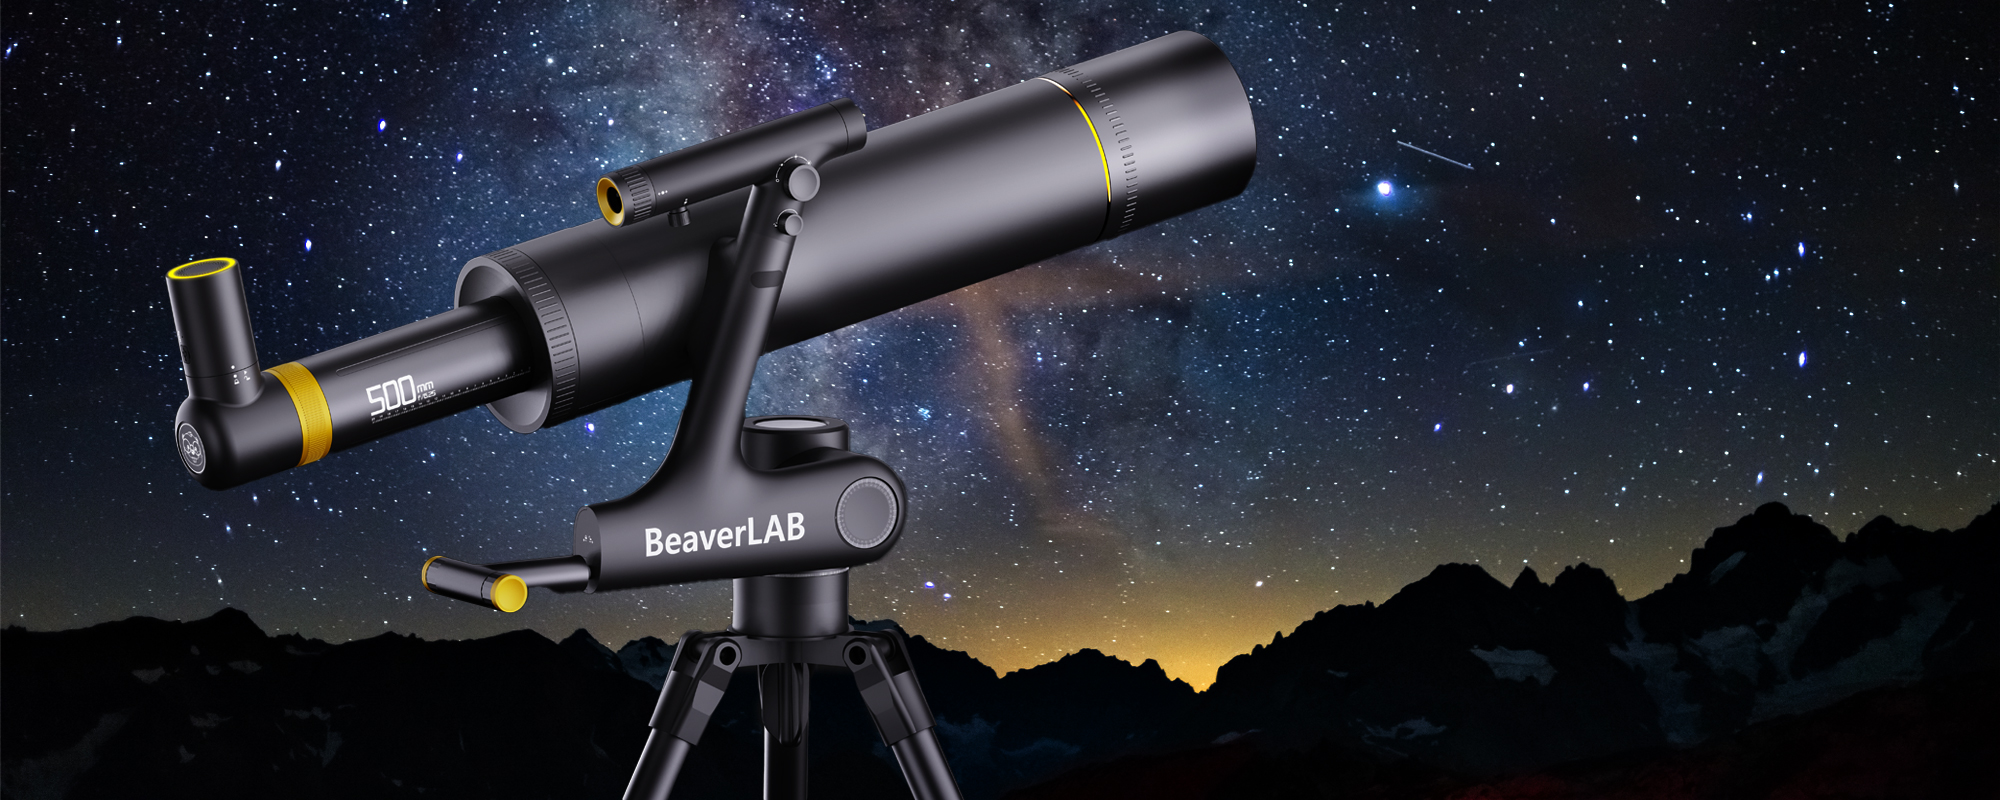 Teleskop cyfrowy BeaverLAB DDL-TW1 Standard Wi-Fi Full HD